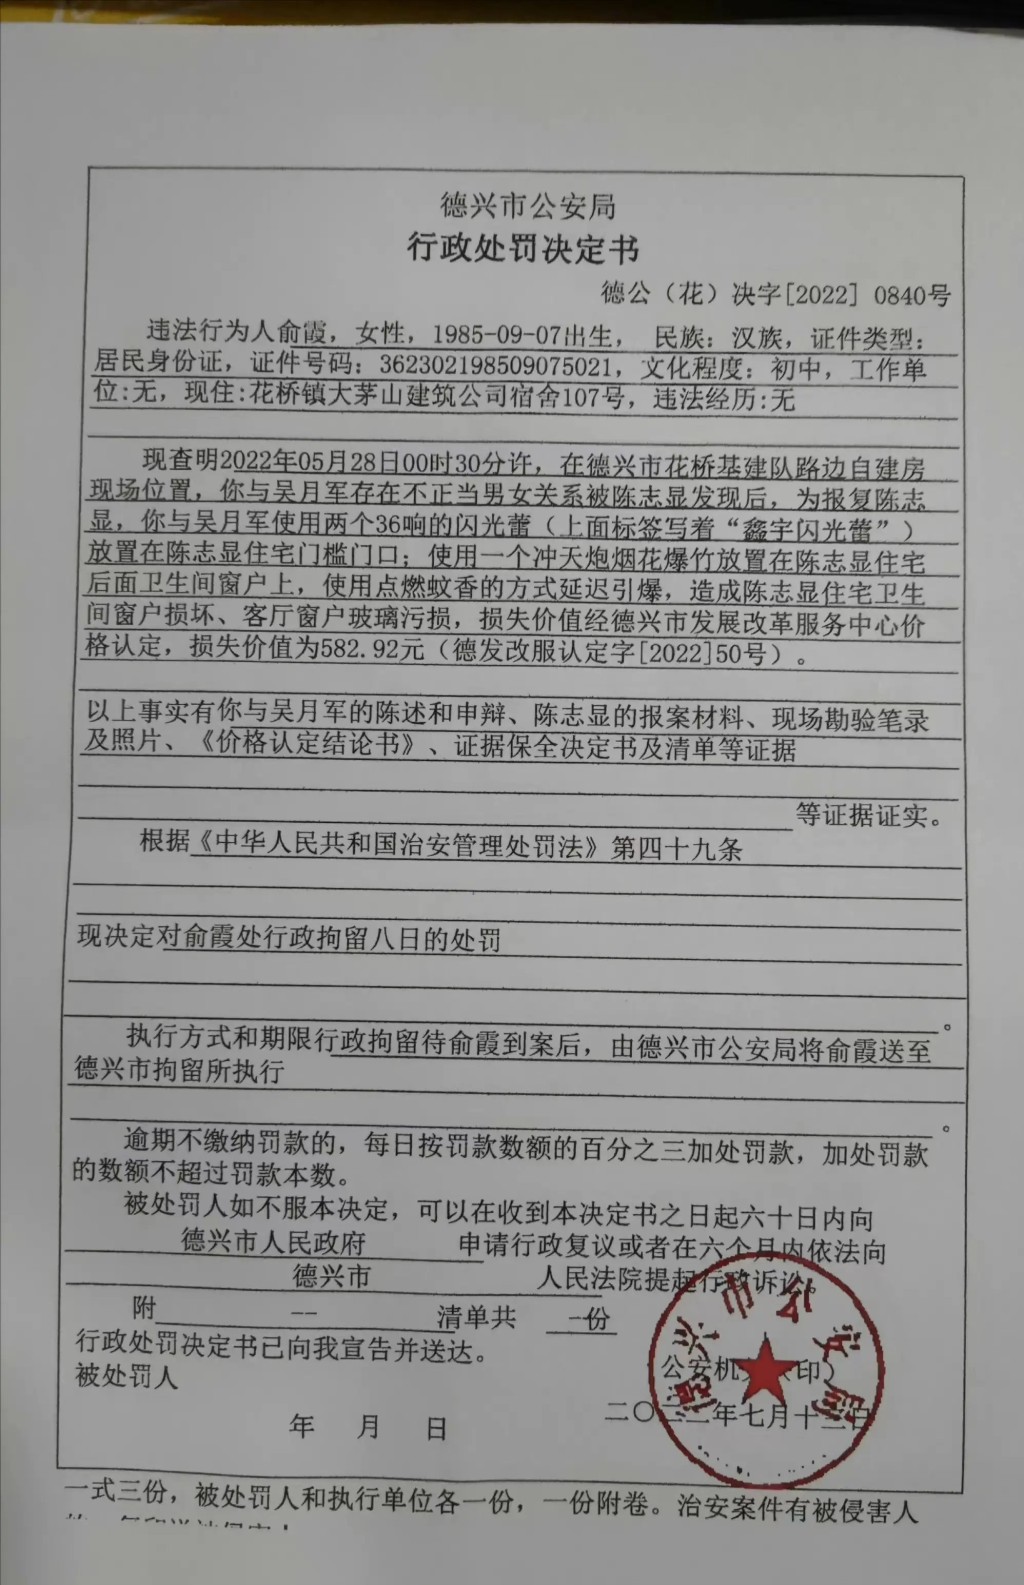 公安确认俞霞与吴月军有不正当关系。微博